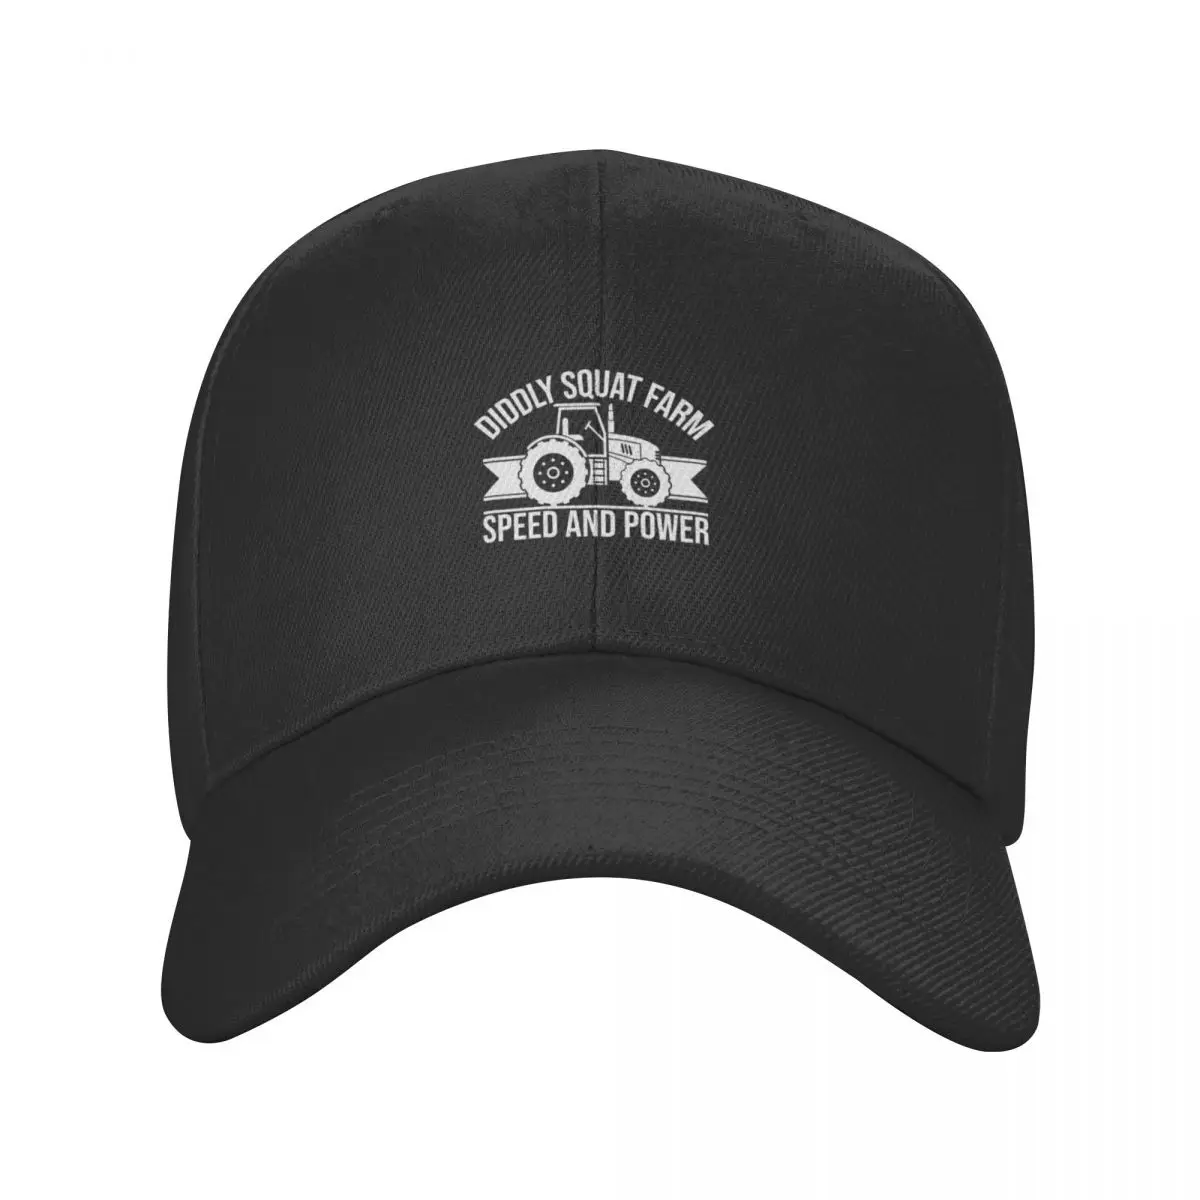 Бейсбольная кепка Diddly Squat Farm Speed And Power с капюшоном, черная рейв-шляпа, мужская и женская . ' - ' . 1